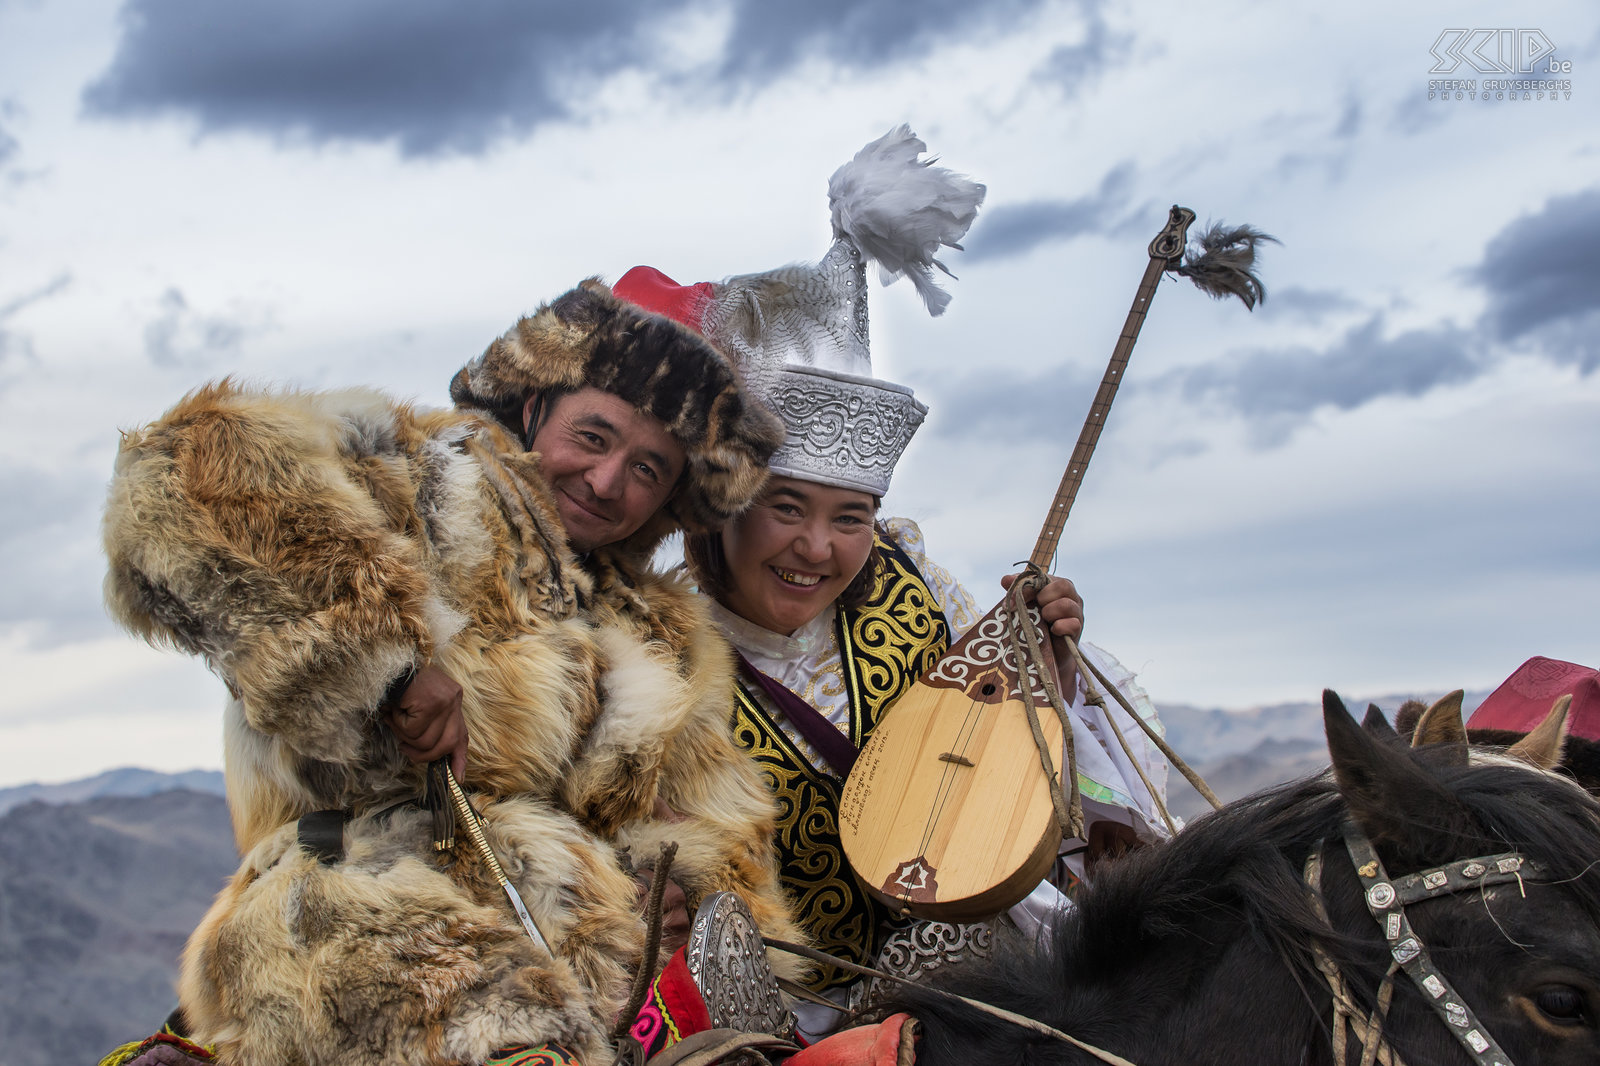 Ulgii - Golden Eagle Festival - Koppel Een vriendelijk koppel Kazakken, beiden in hun traditionele kledij. Stefan Cruysberghs